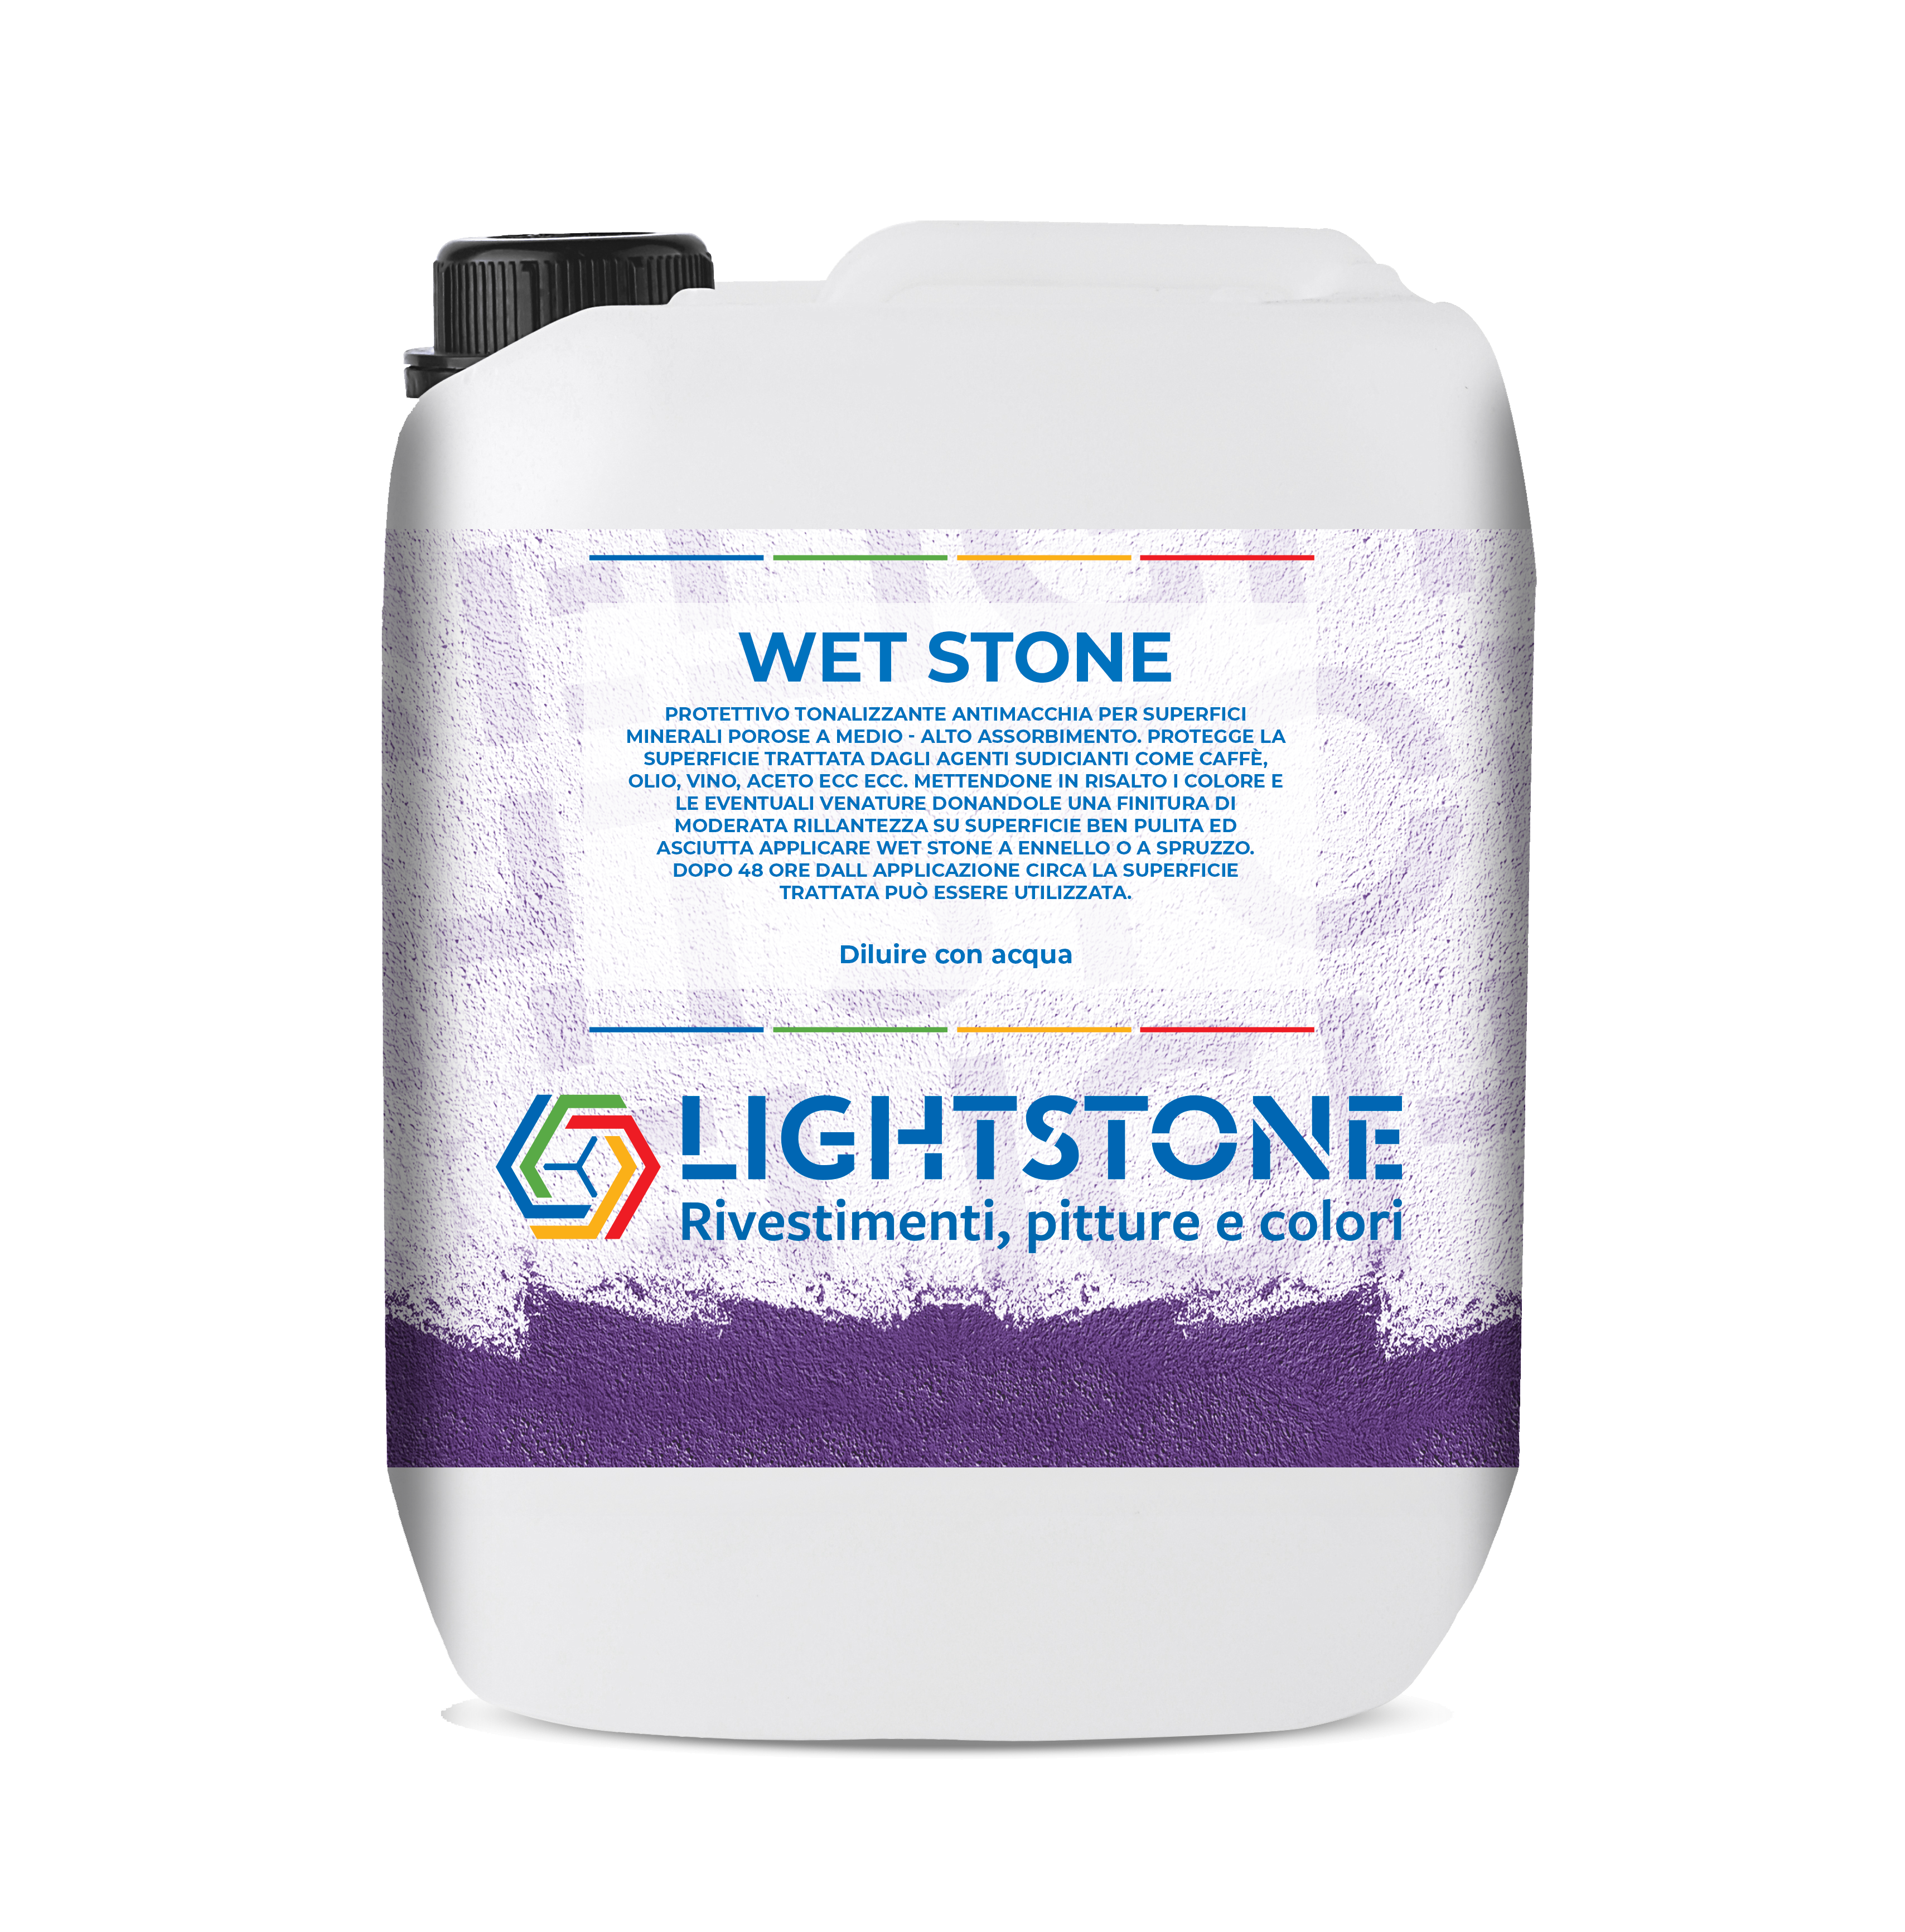 Wet Stone